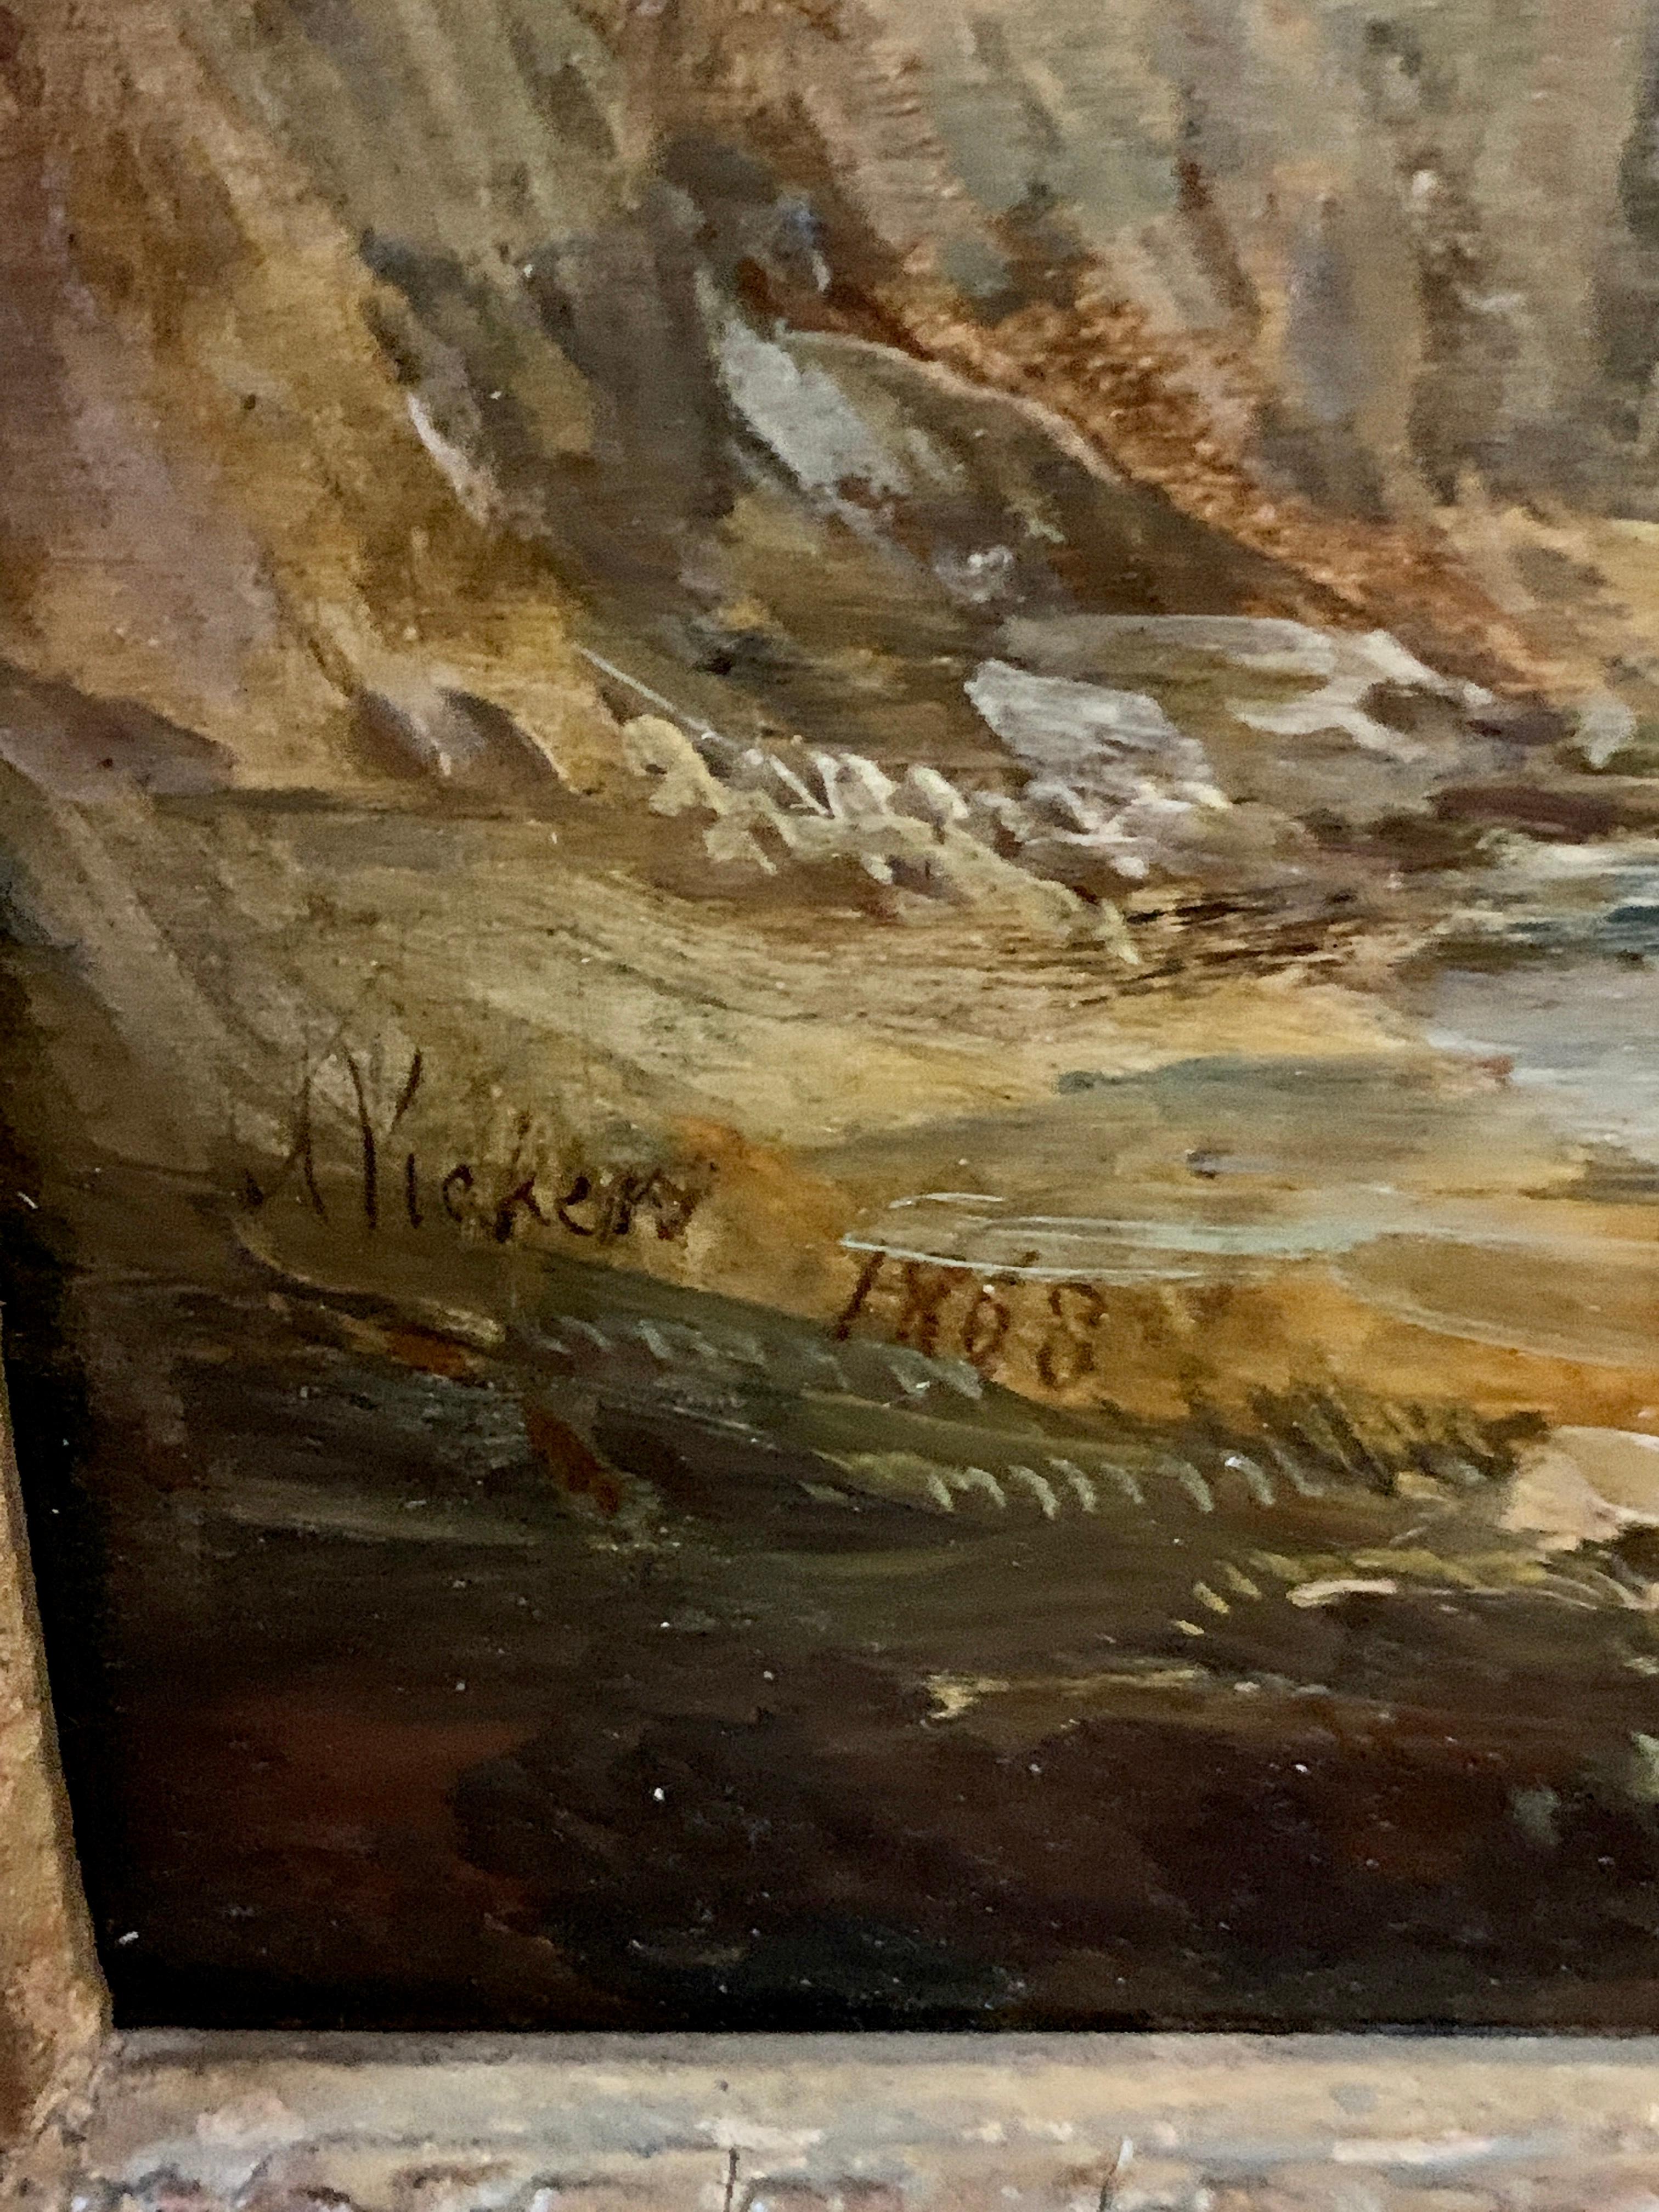 Superbe paysage anglais du 19e siècle à l'huile ancienne avec des vaches se reposant au bord d'une rivière.

Alfred Vickers était un peintre de sujets marins et de paysages. Il a beaucoup exposé tout au long de sa vie, notamment à la Royal Academy